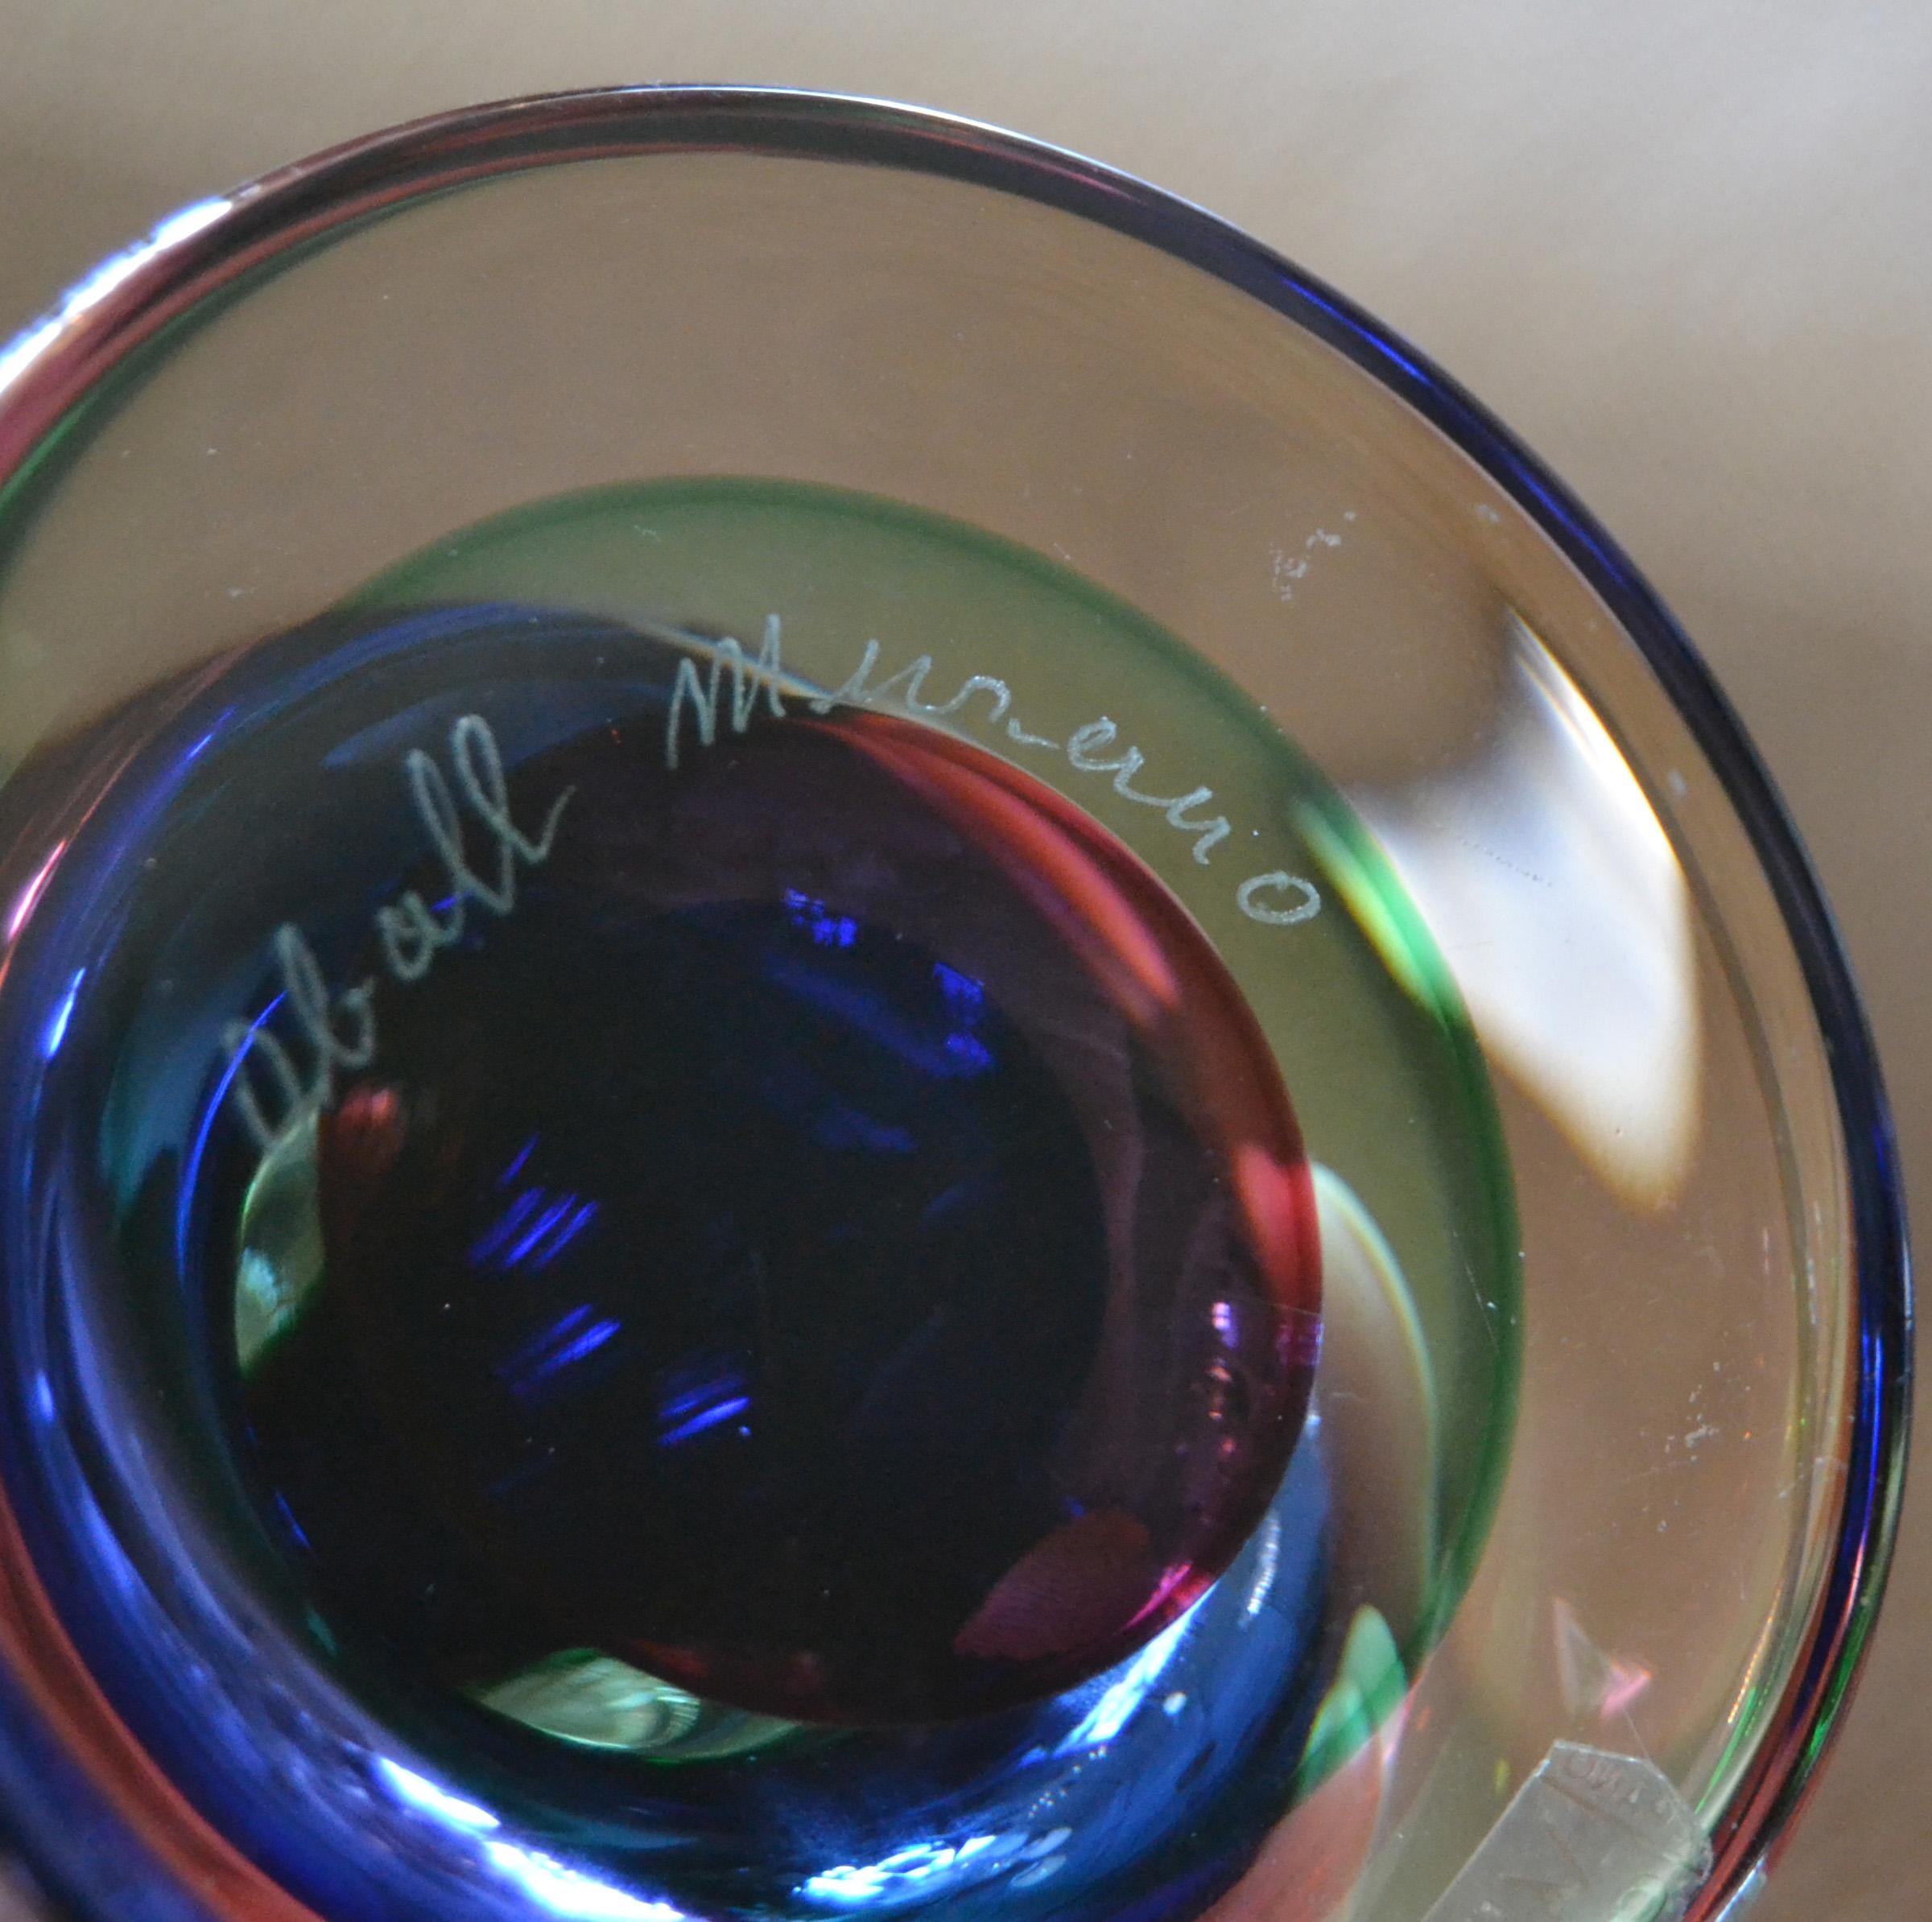 Vetro artistico Vetreria Artistica Oball di Murano in vetro artistico multicolore con marchio Vetreria Artistica Oball, fermacarte Italia in vendita